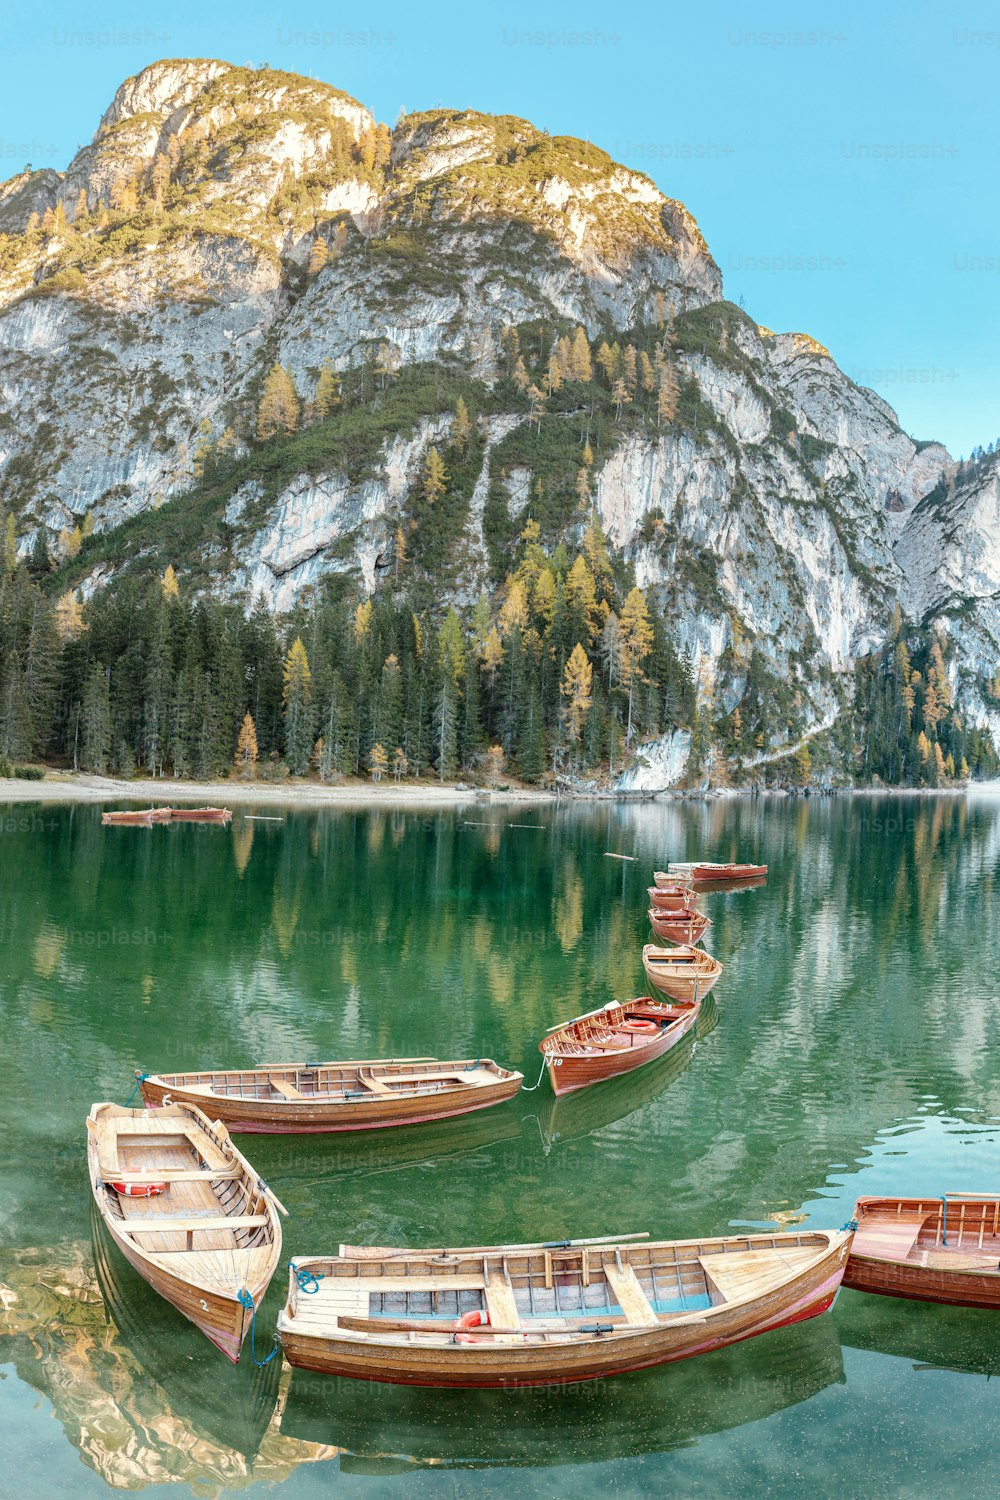 Eine zauberhafte Panoramalandschaft mit ruhigen Farben des berühmten Pragser Wildsees in den Dolomiten während der Herbstsaison. Eine beliebte Touristenattraktion